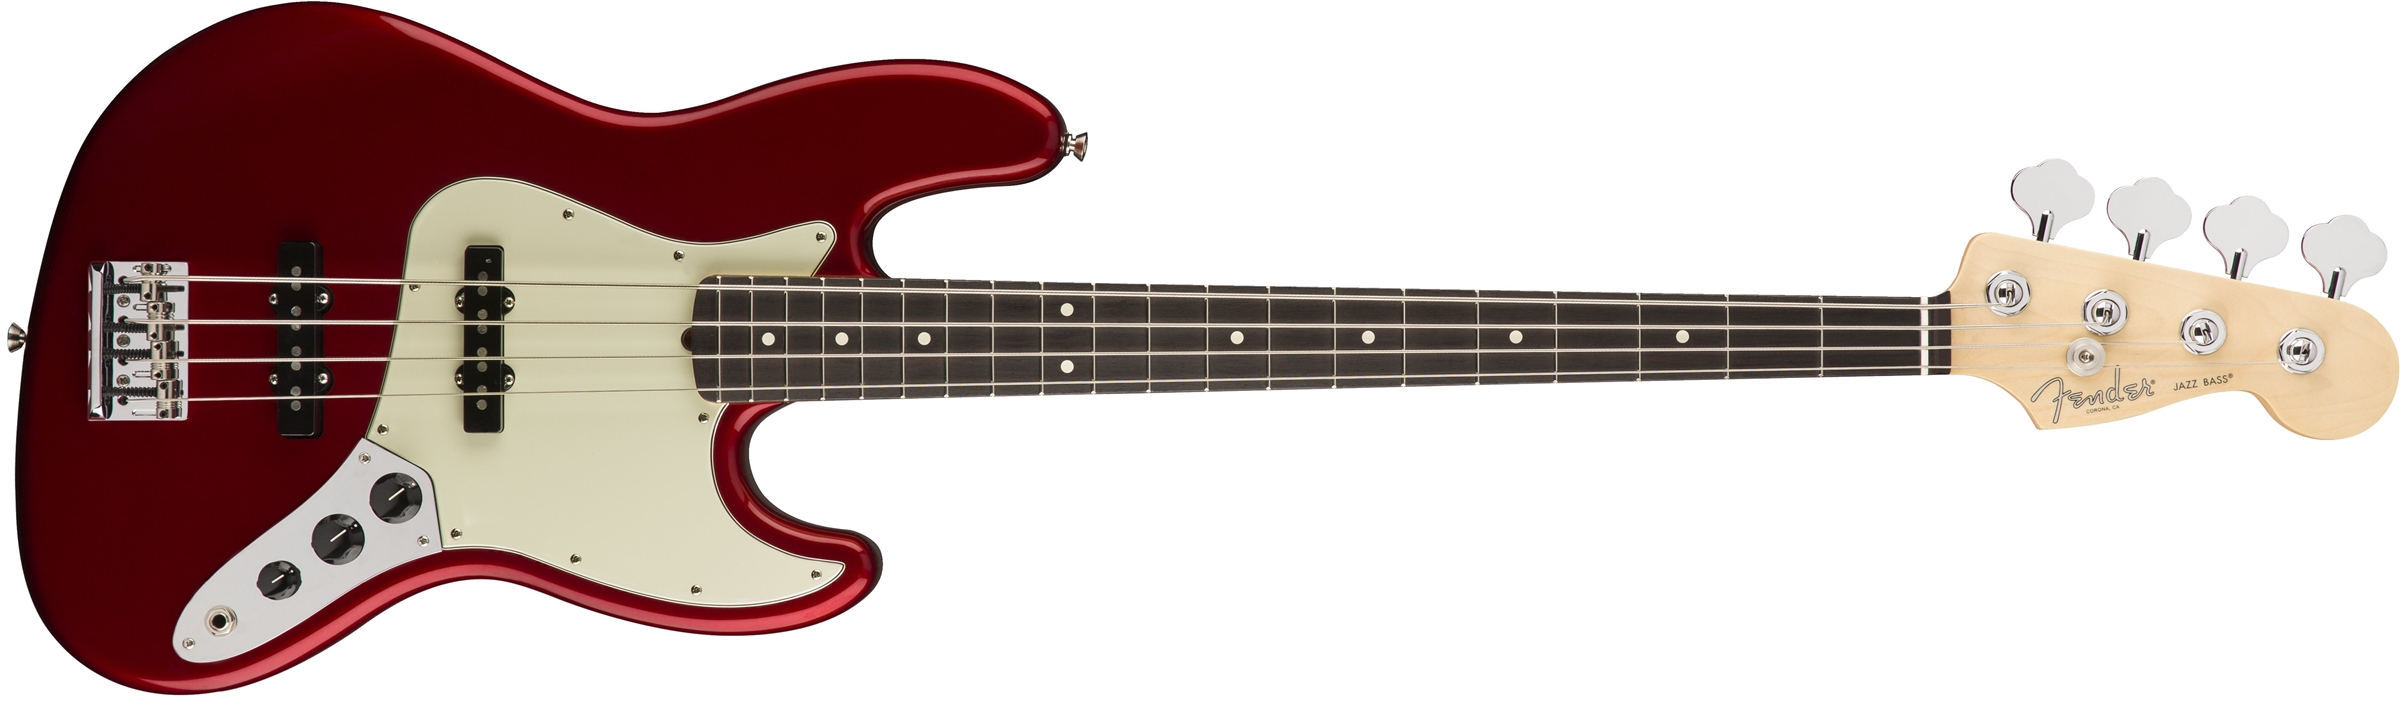 Fender Usa フェンダーusa エレクトリックベース 平野楽器 ロッキン